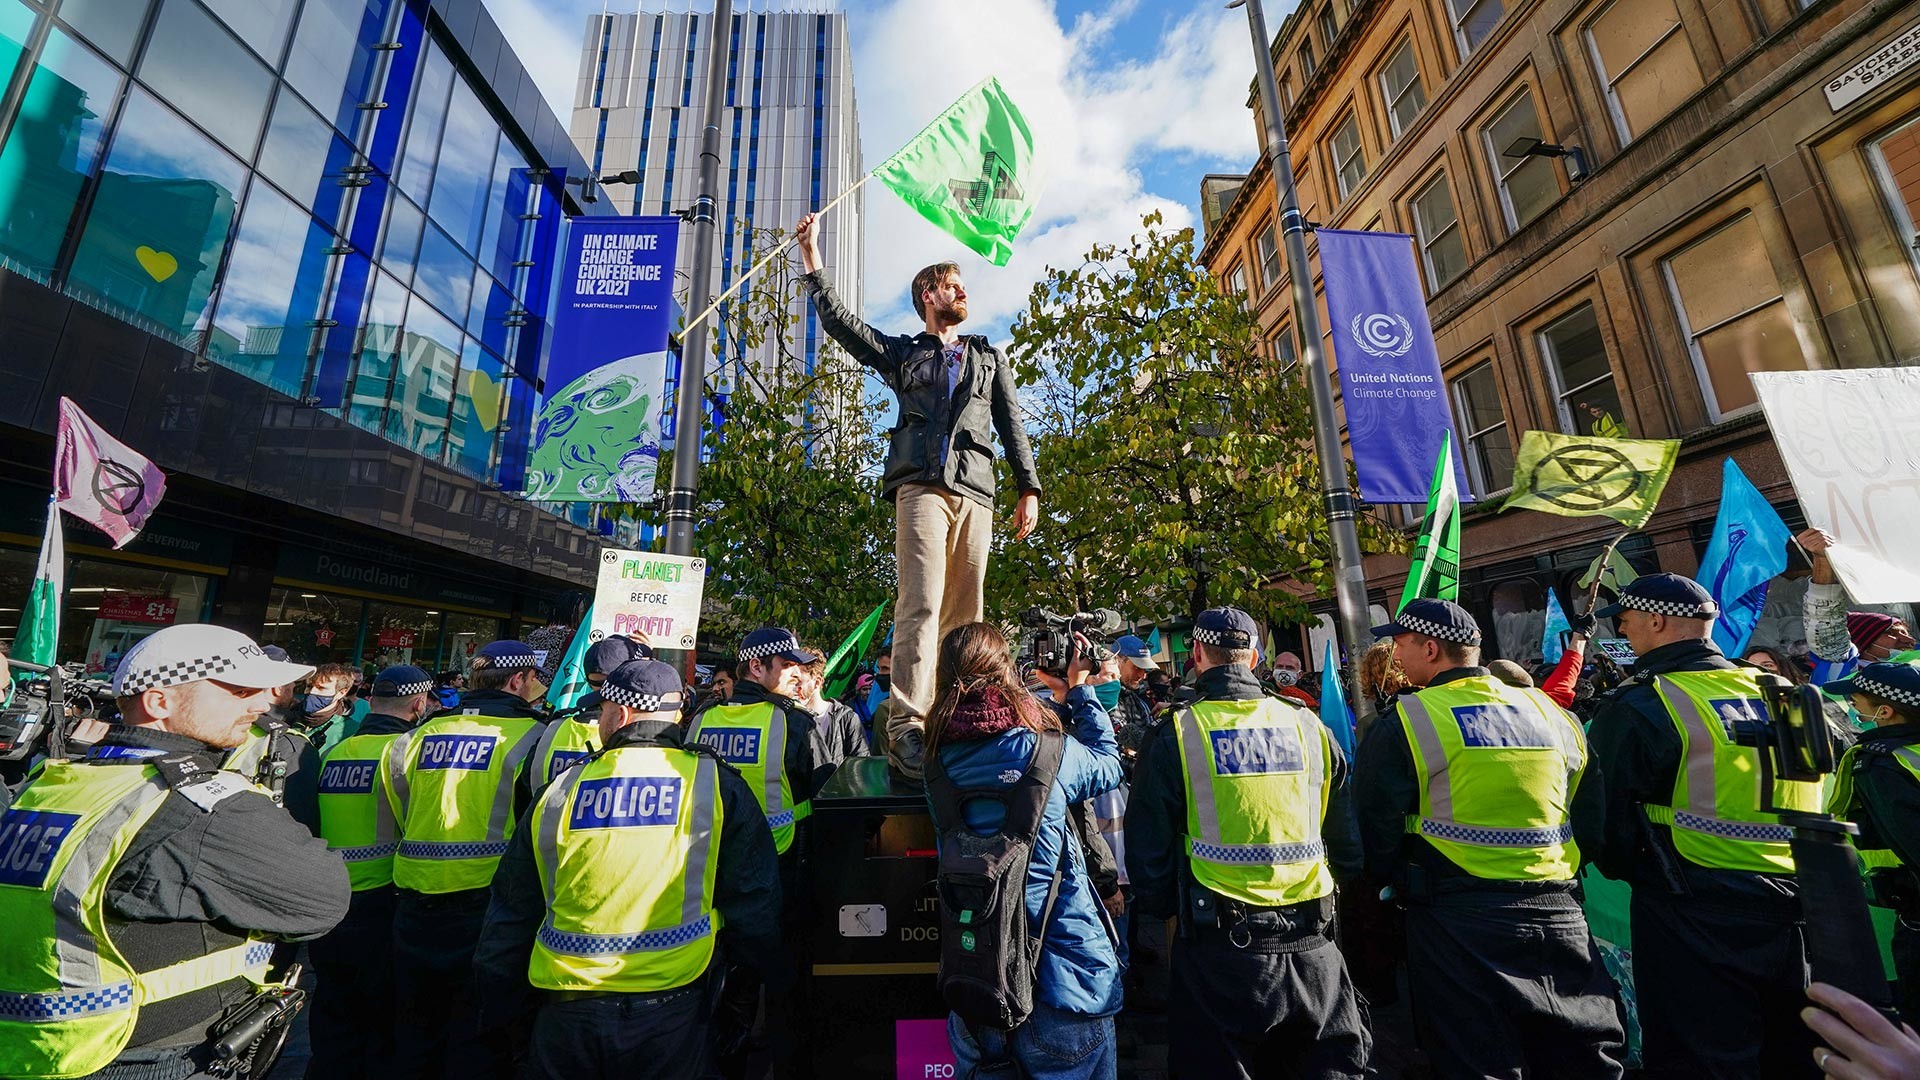 Полиција и демонстранти на протесту „Побуна против изумирања“ у Улици Бјукенан током самита COP26 у Глазгову.